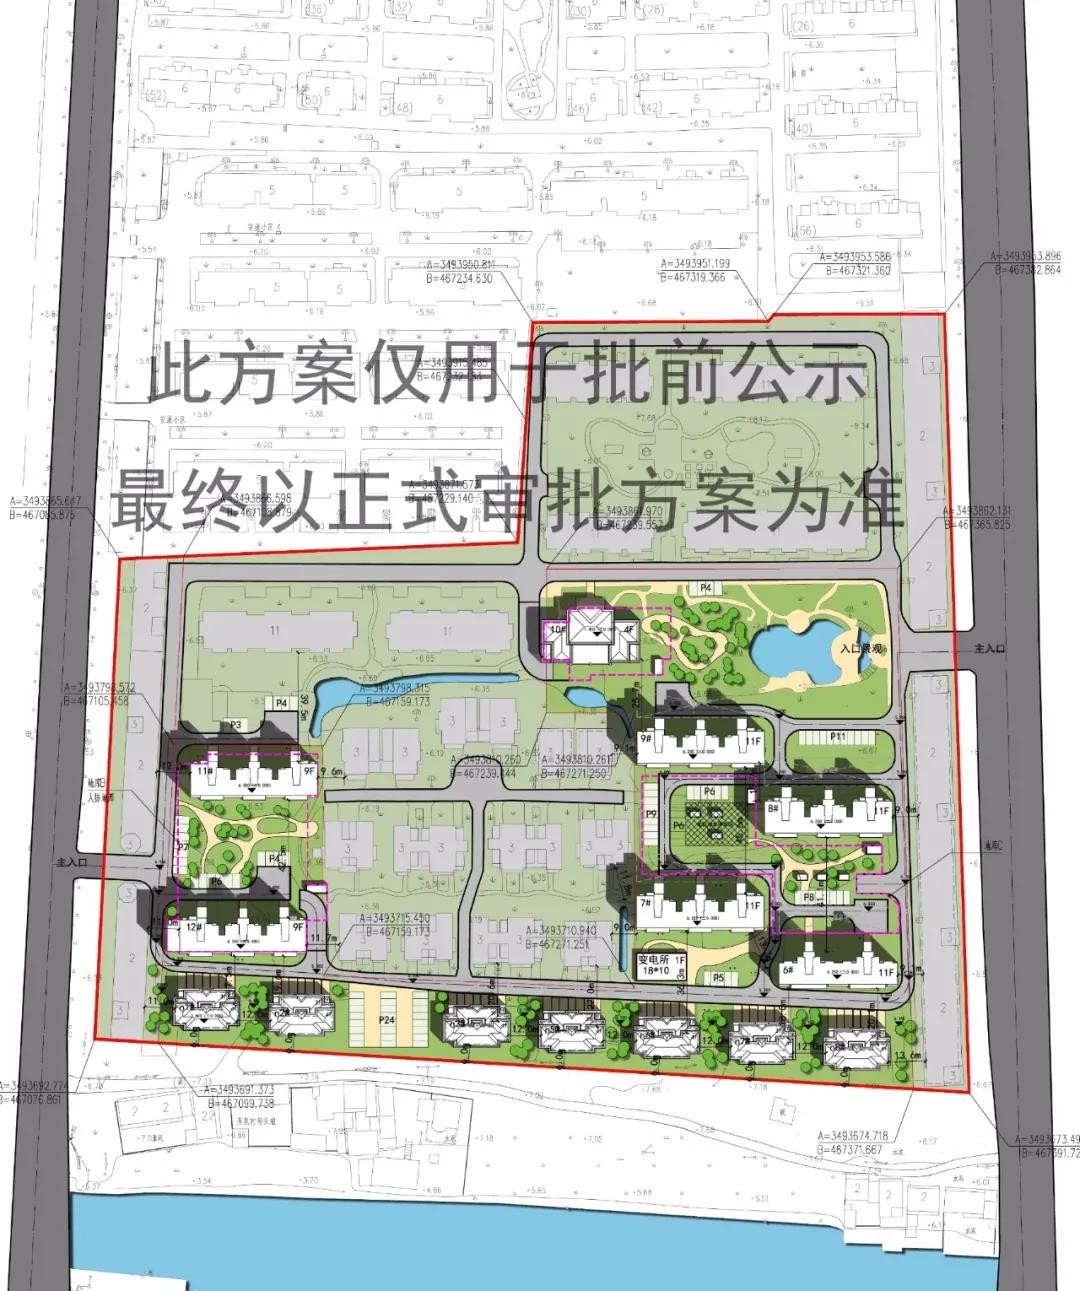 宜兴市新建镇御景豪庭地块三期调整总平方案批前公示